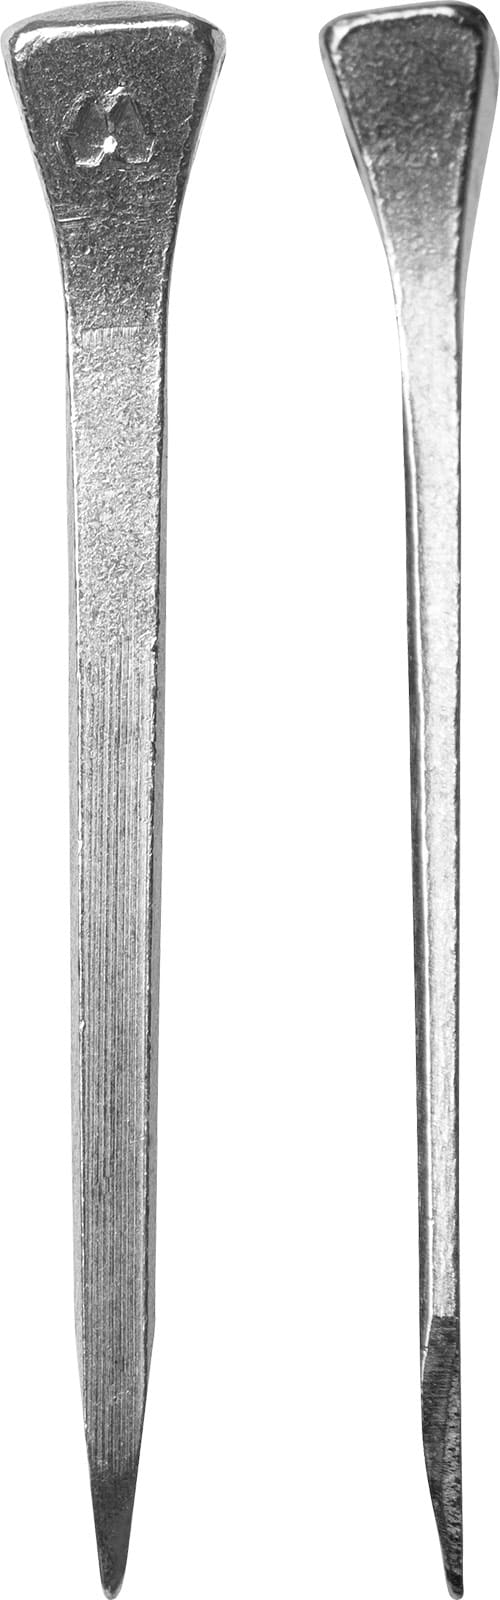 Mustad LiBero-ARC hoefnagel, voorkant en zijkant